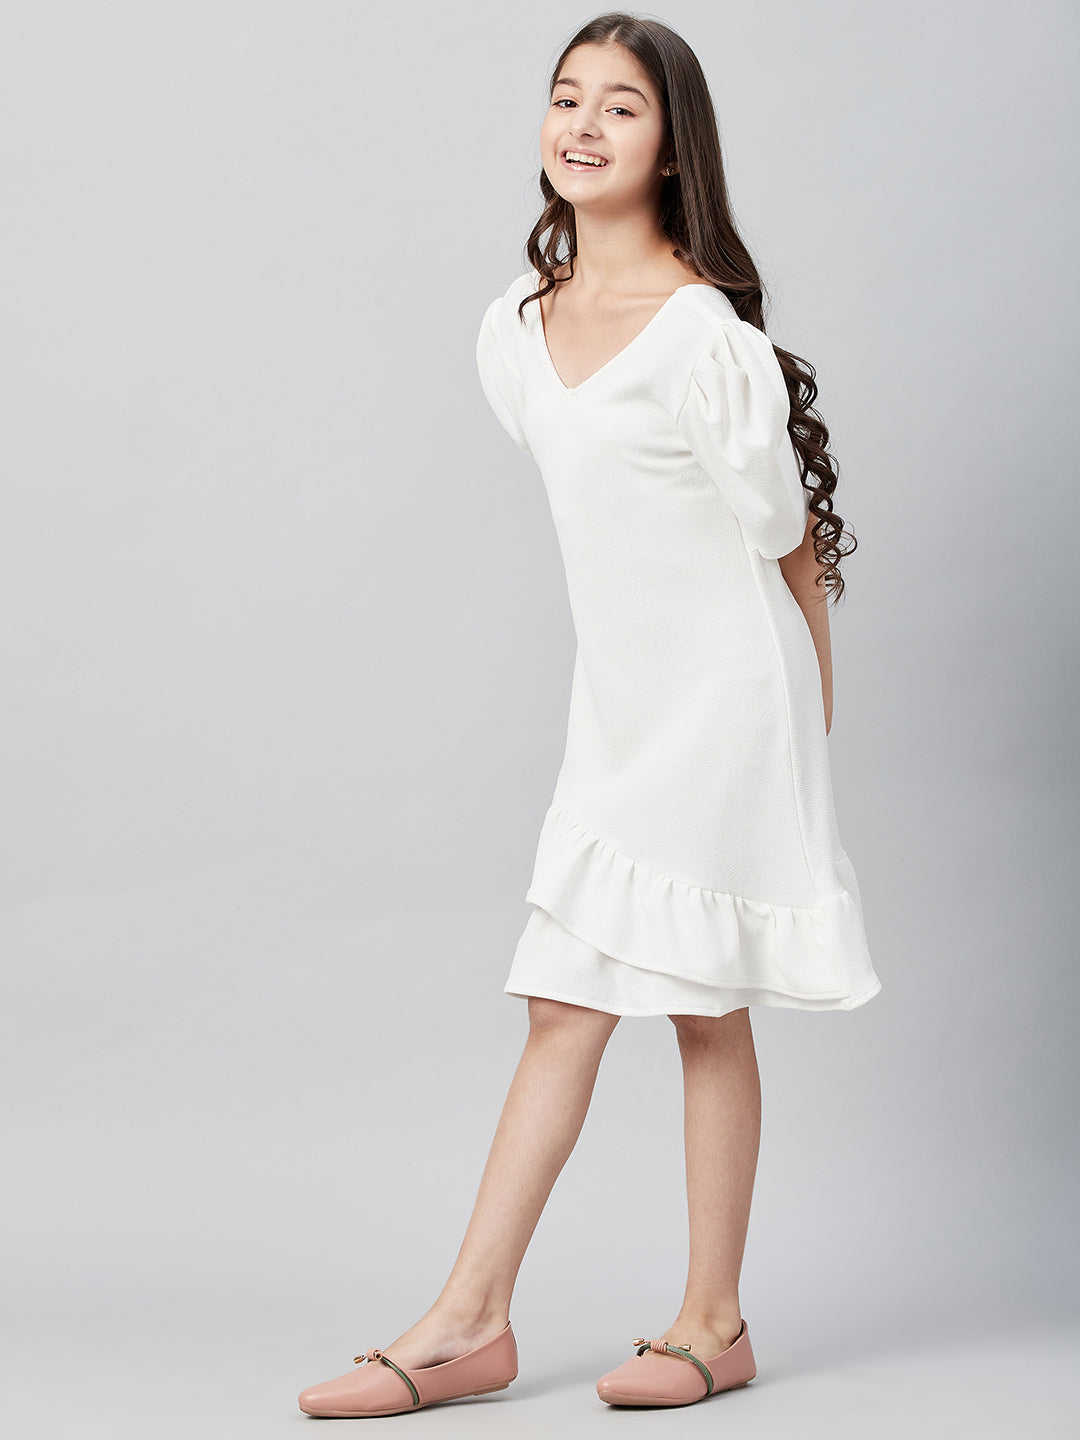 Athena Girl White A-Line Dress - Athena Lifestyle